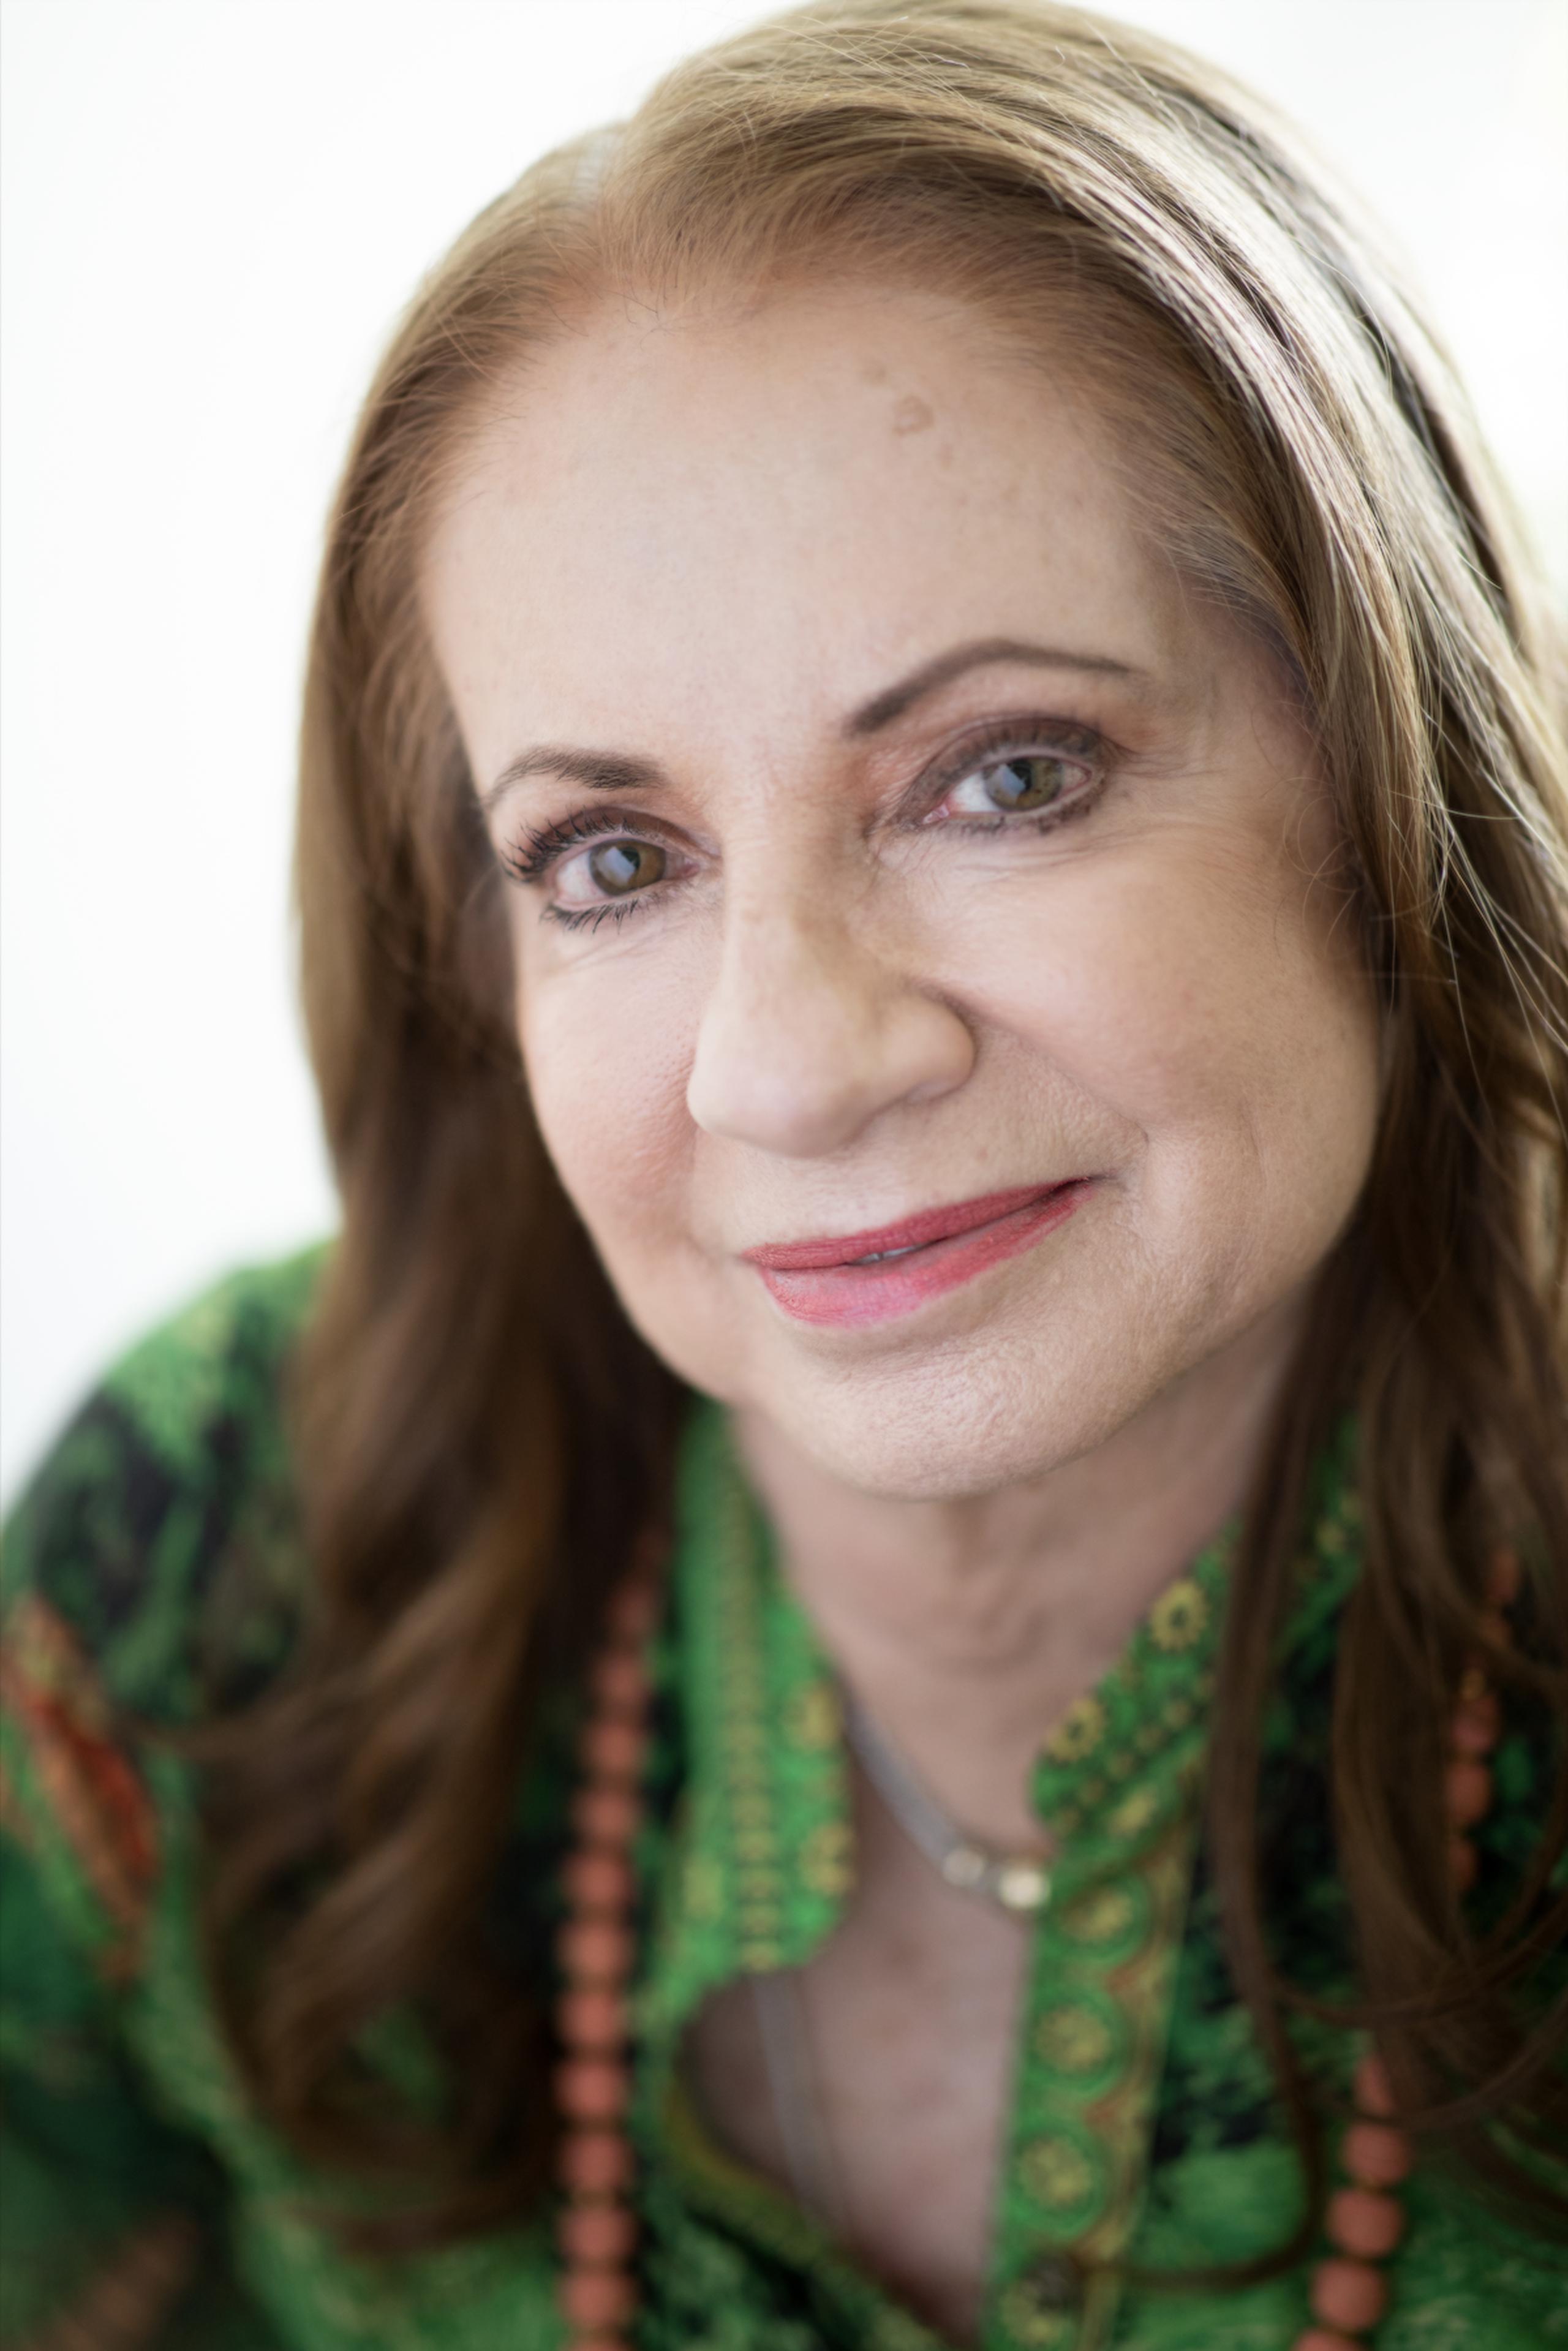 La autora Vivian López-Llamas se destacó anteriormente en el ámbito corporativo antes de adentrarse en el literario.